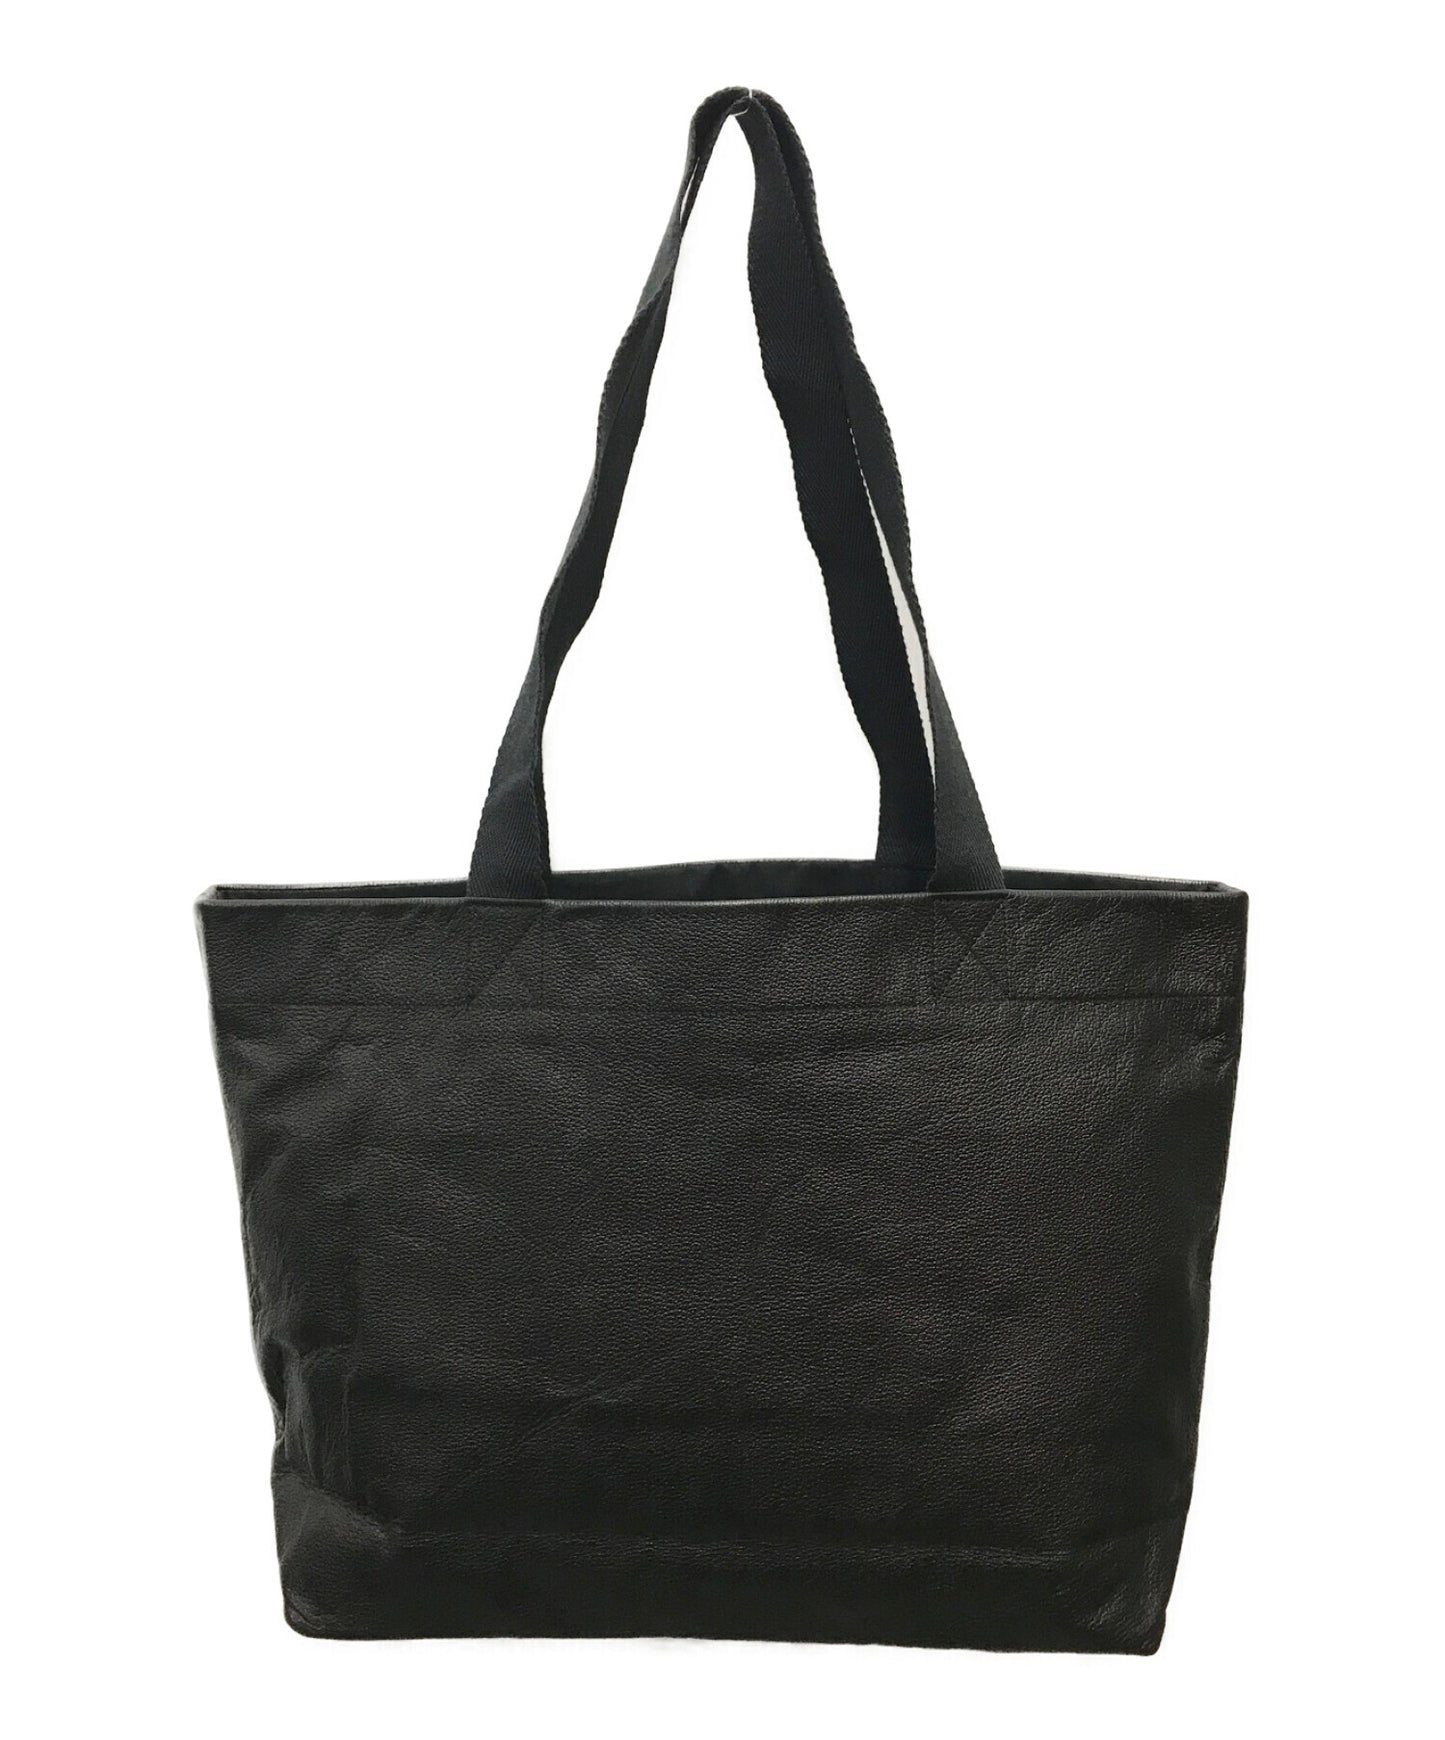 Yohji Yamamoto Mini Leather Tote Bag